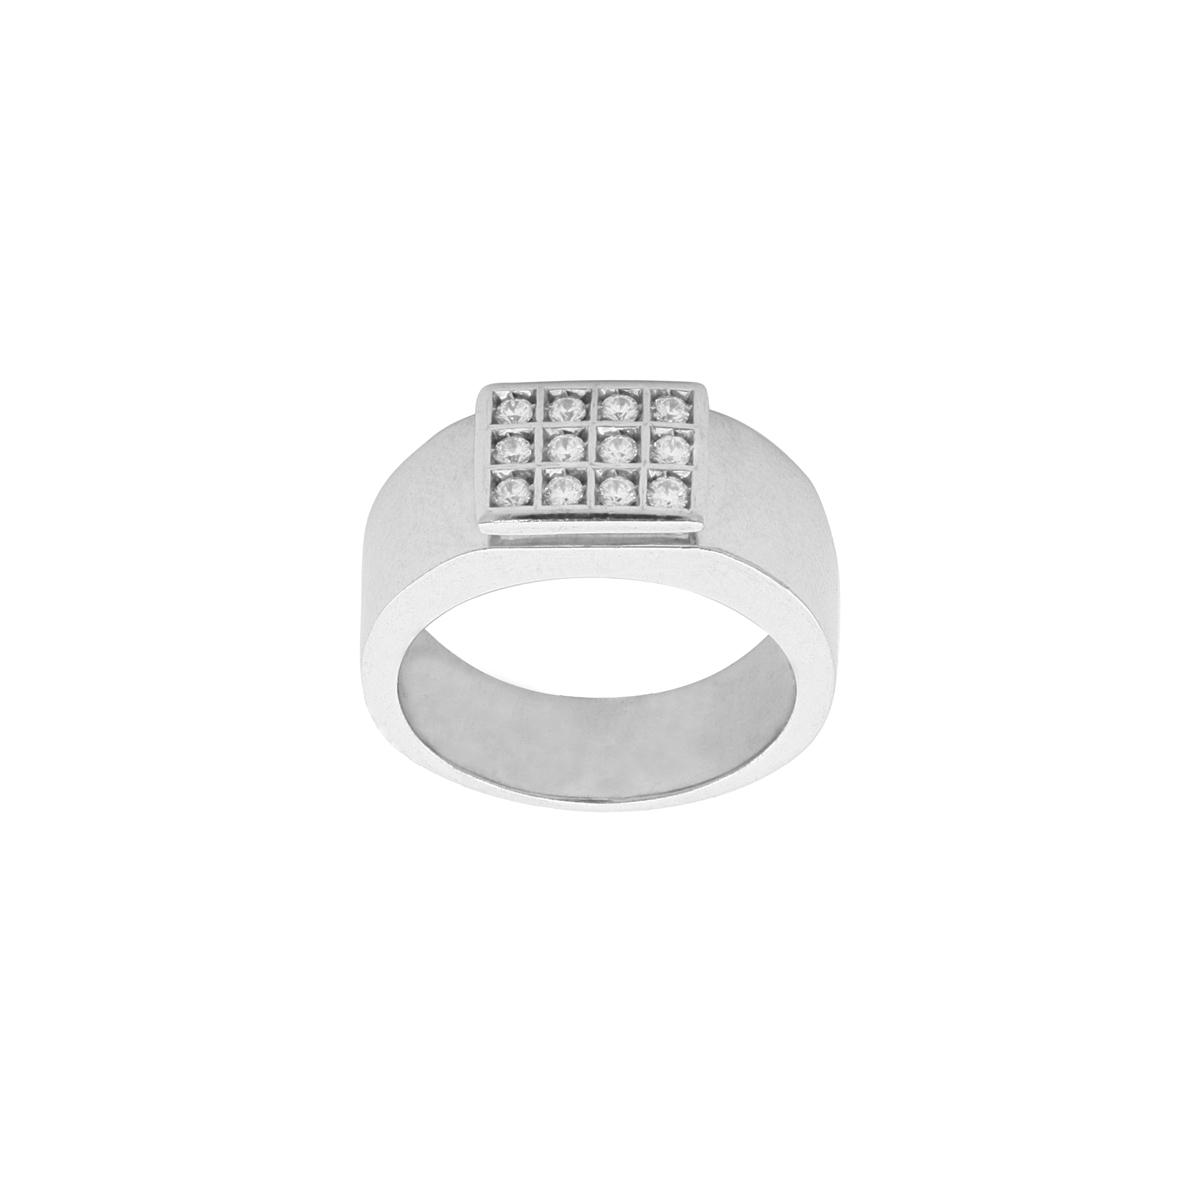 12 Diamond Grid Ring in Platinum